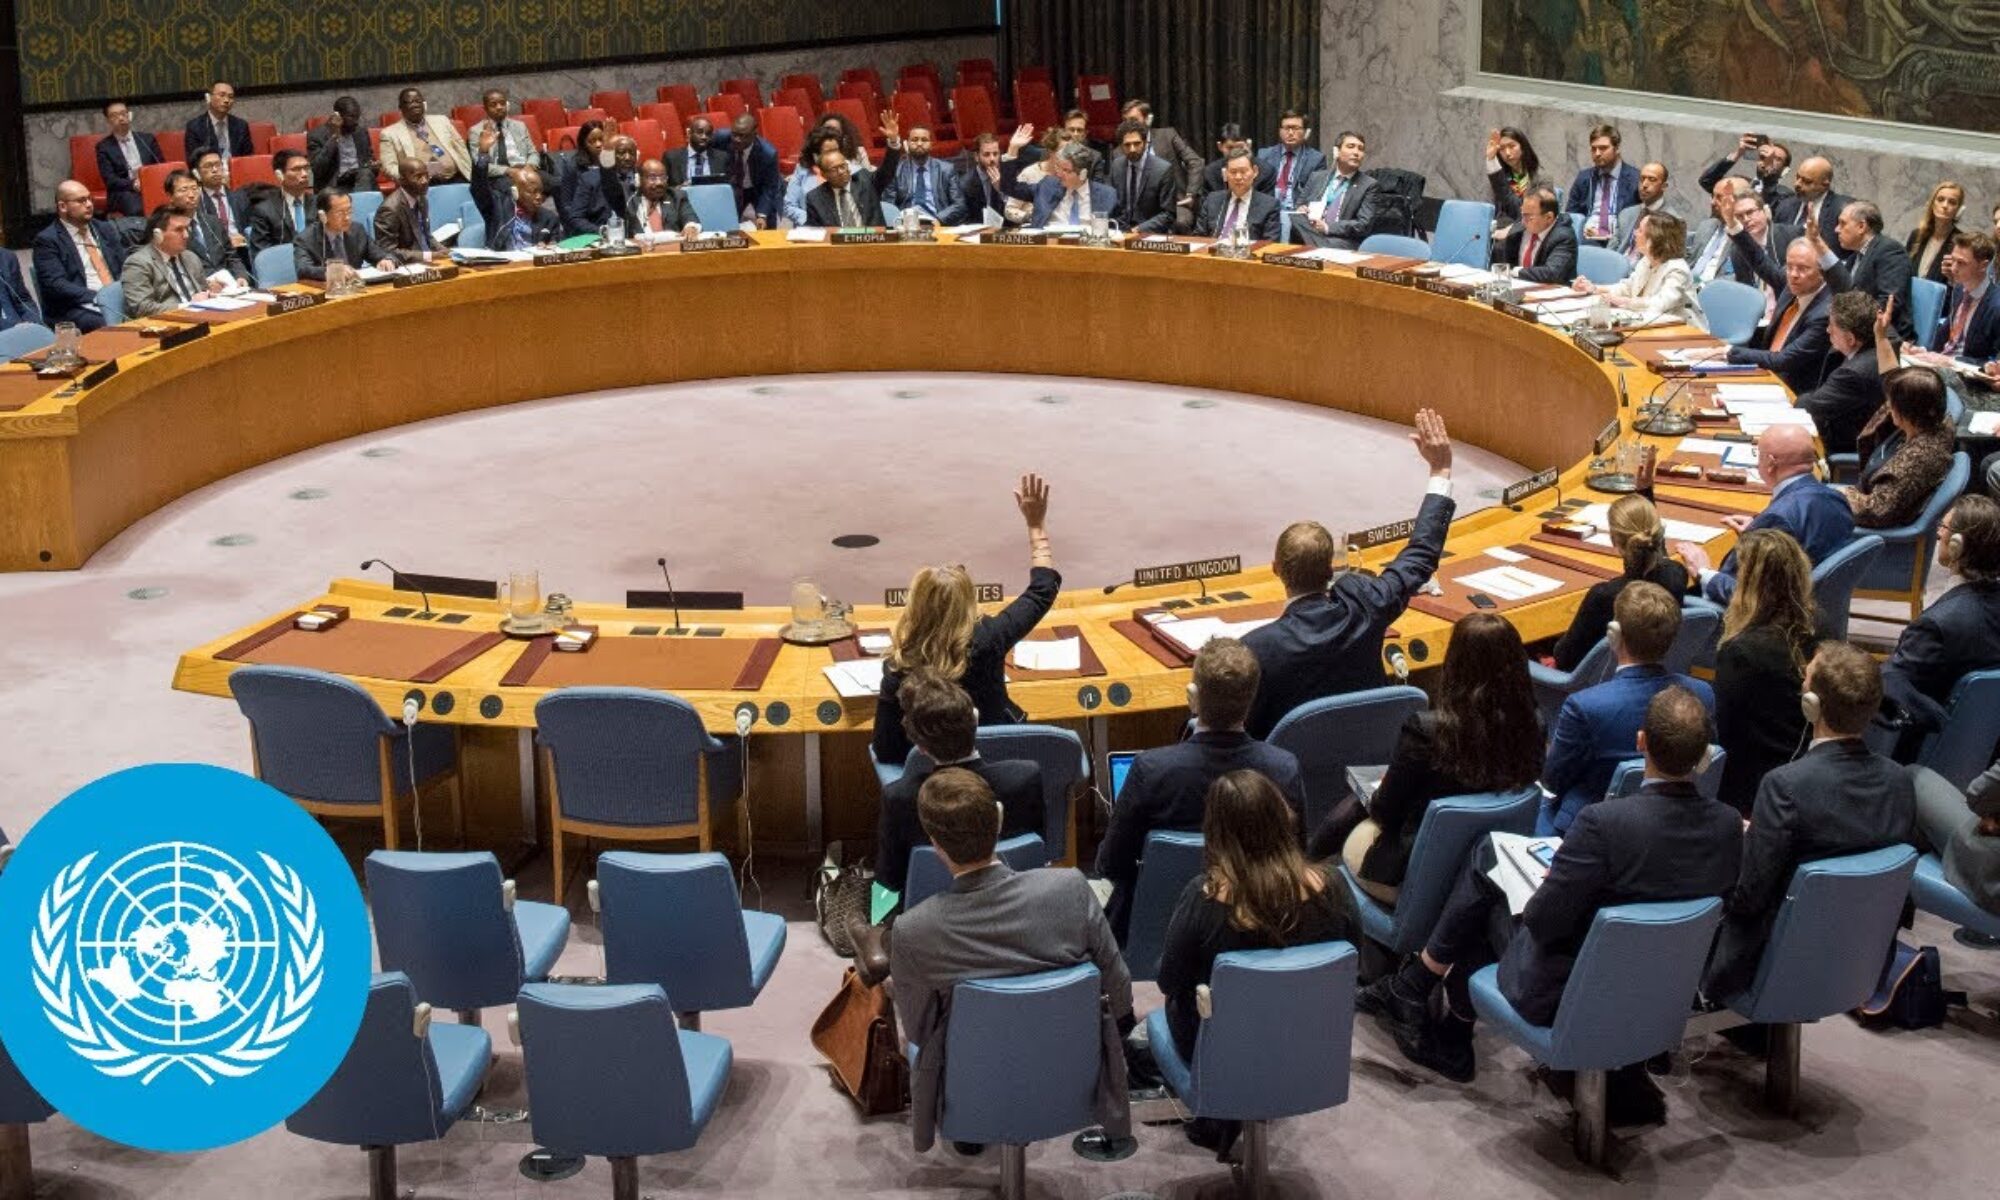 Birleşmiş Milletler Irak gündemli toplandı, operasyonlar, seçimler ve ihtilaflar tartışıldı çin, Türkiye, Erbil, Bağdat